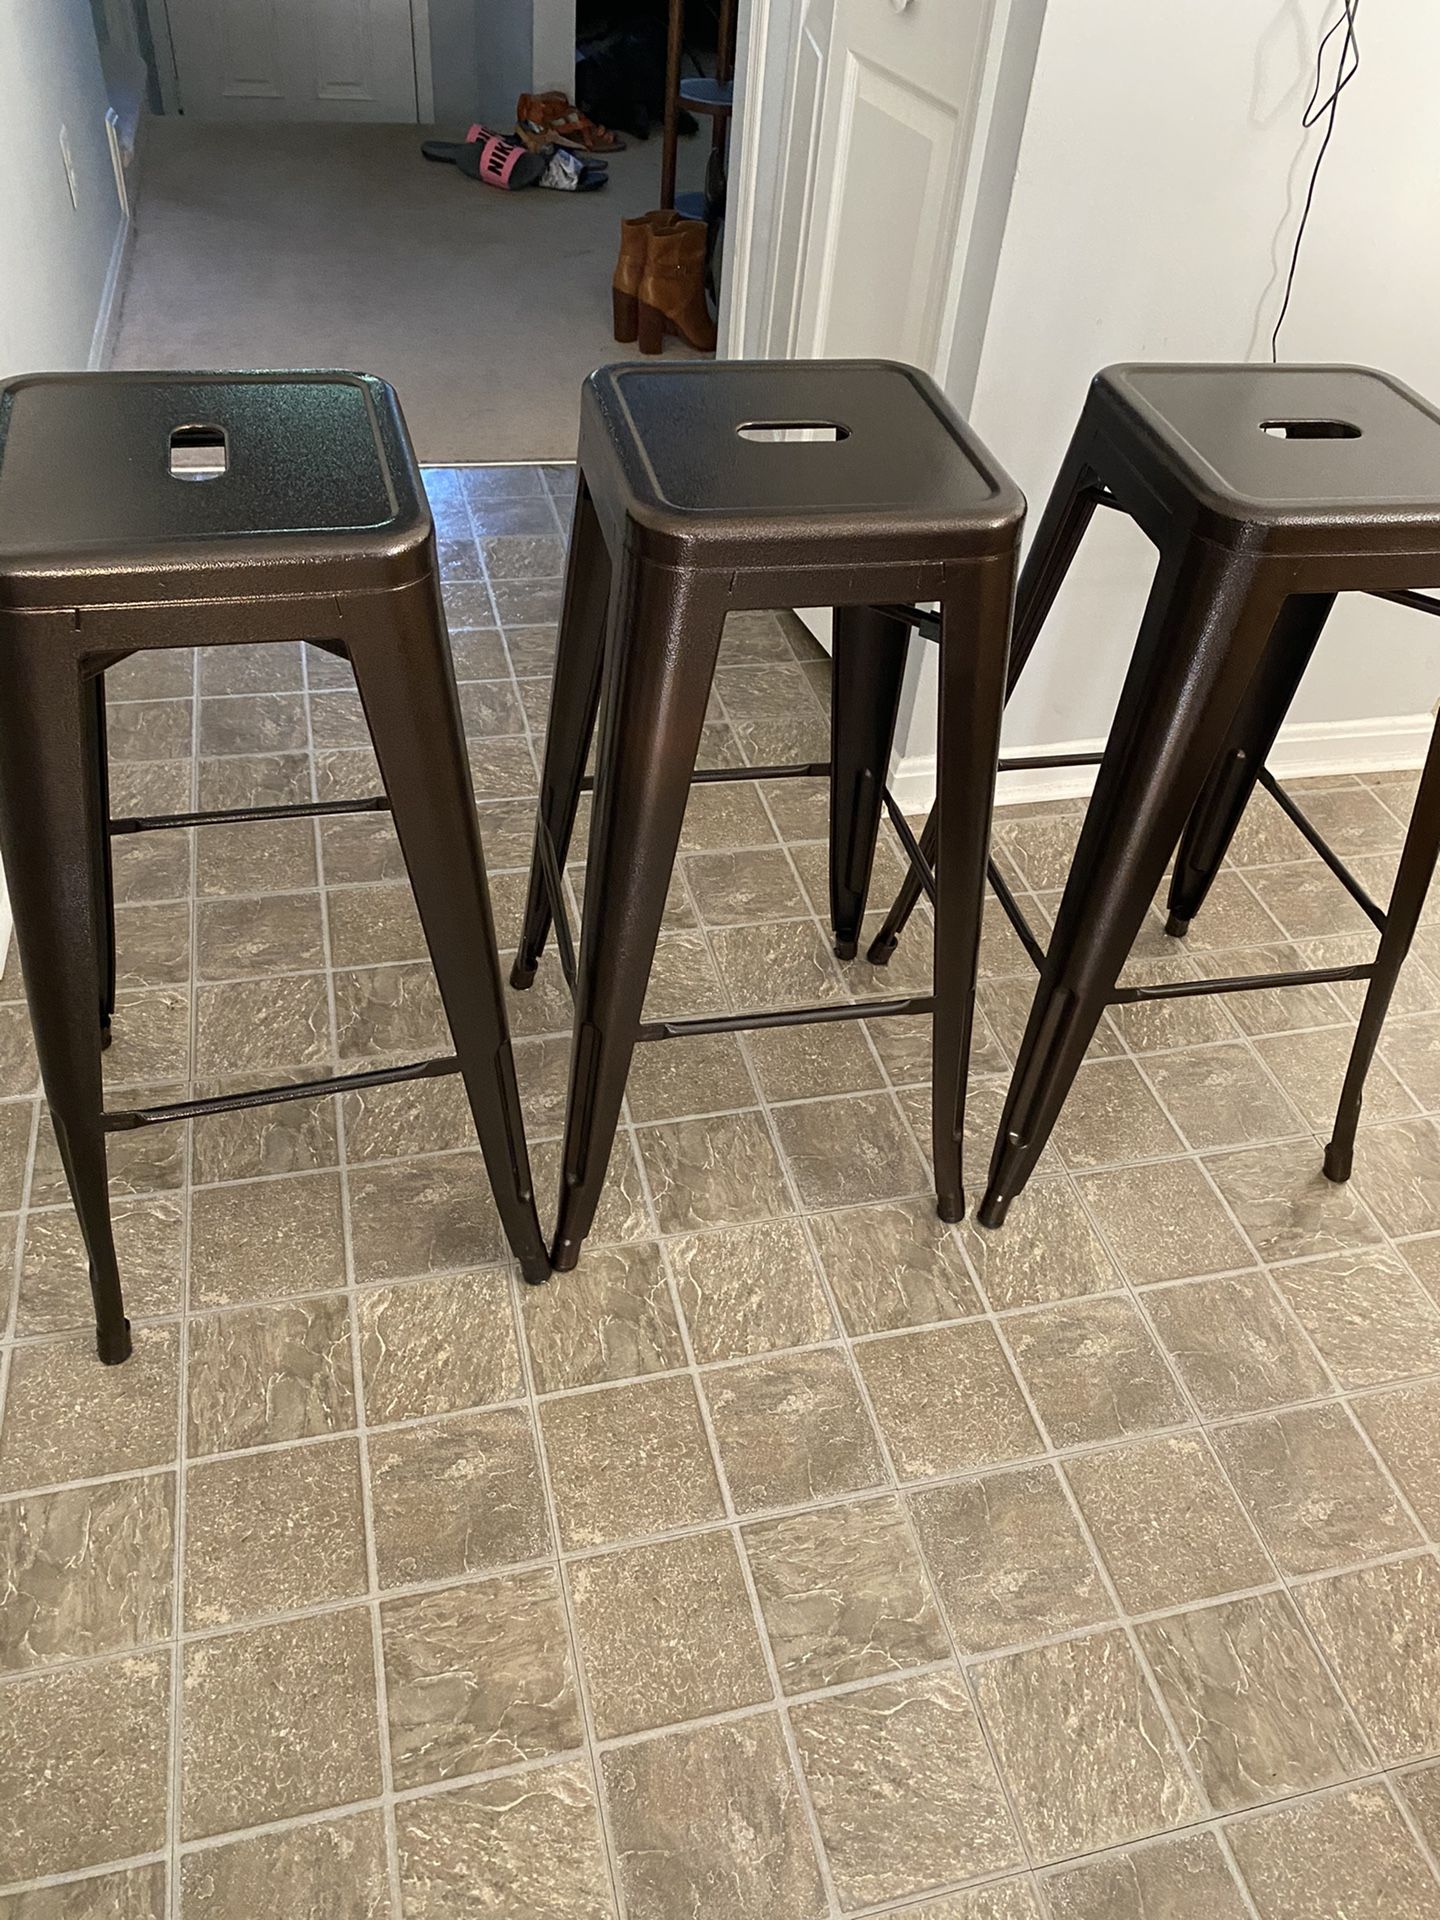 3 matching Bar stools